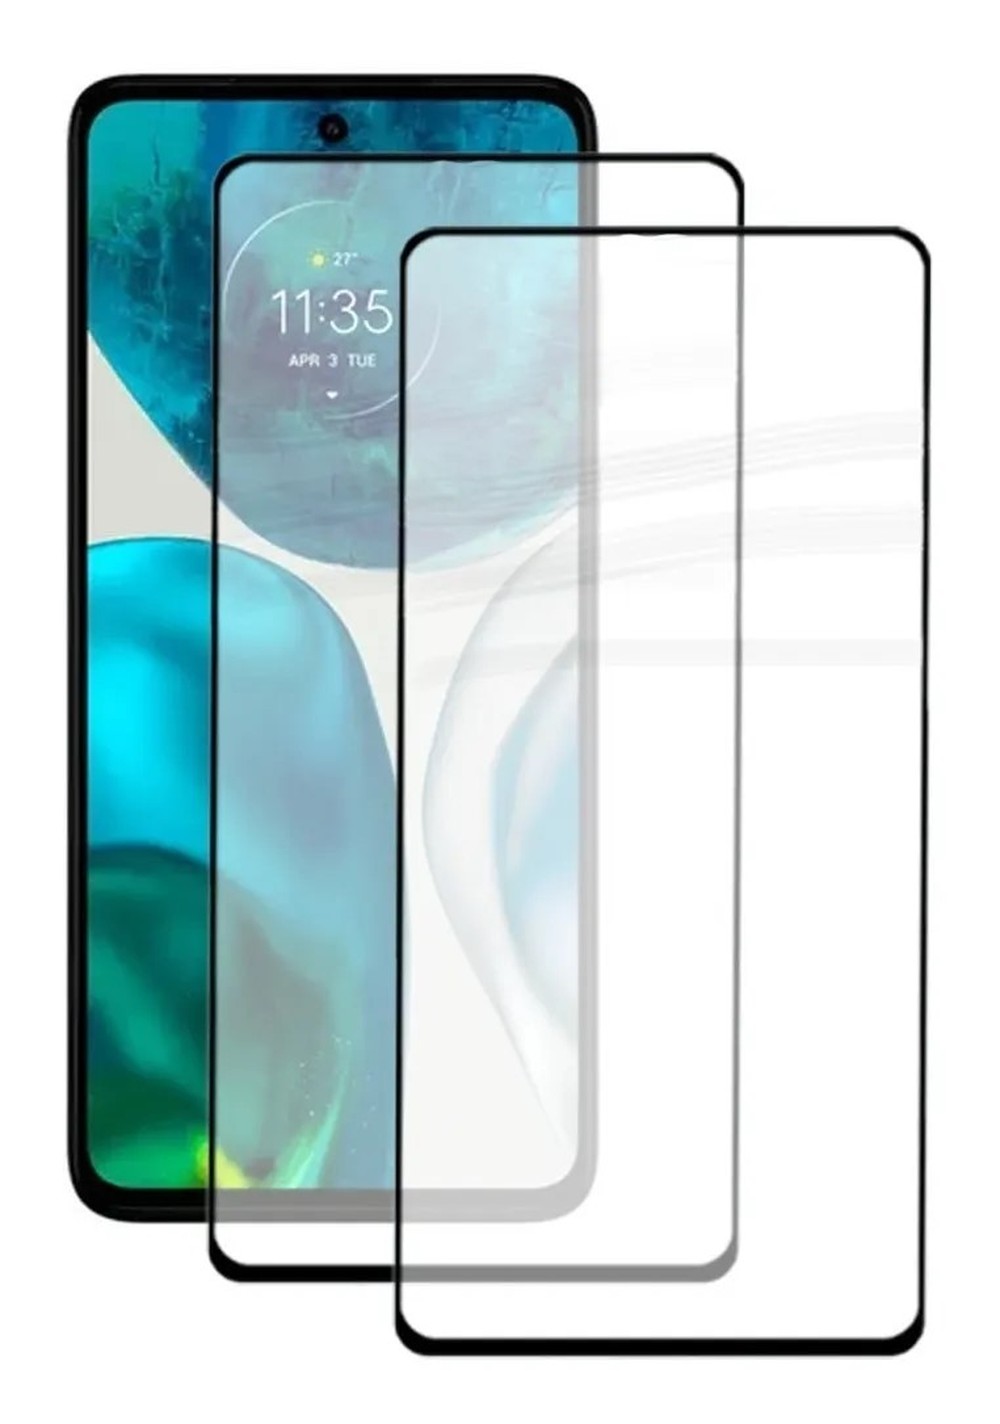 Pelicula de vidro P/ Celular A53 Samsung